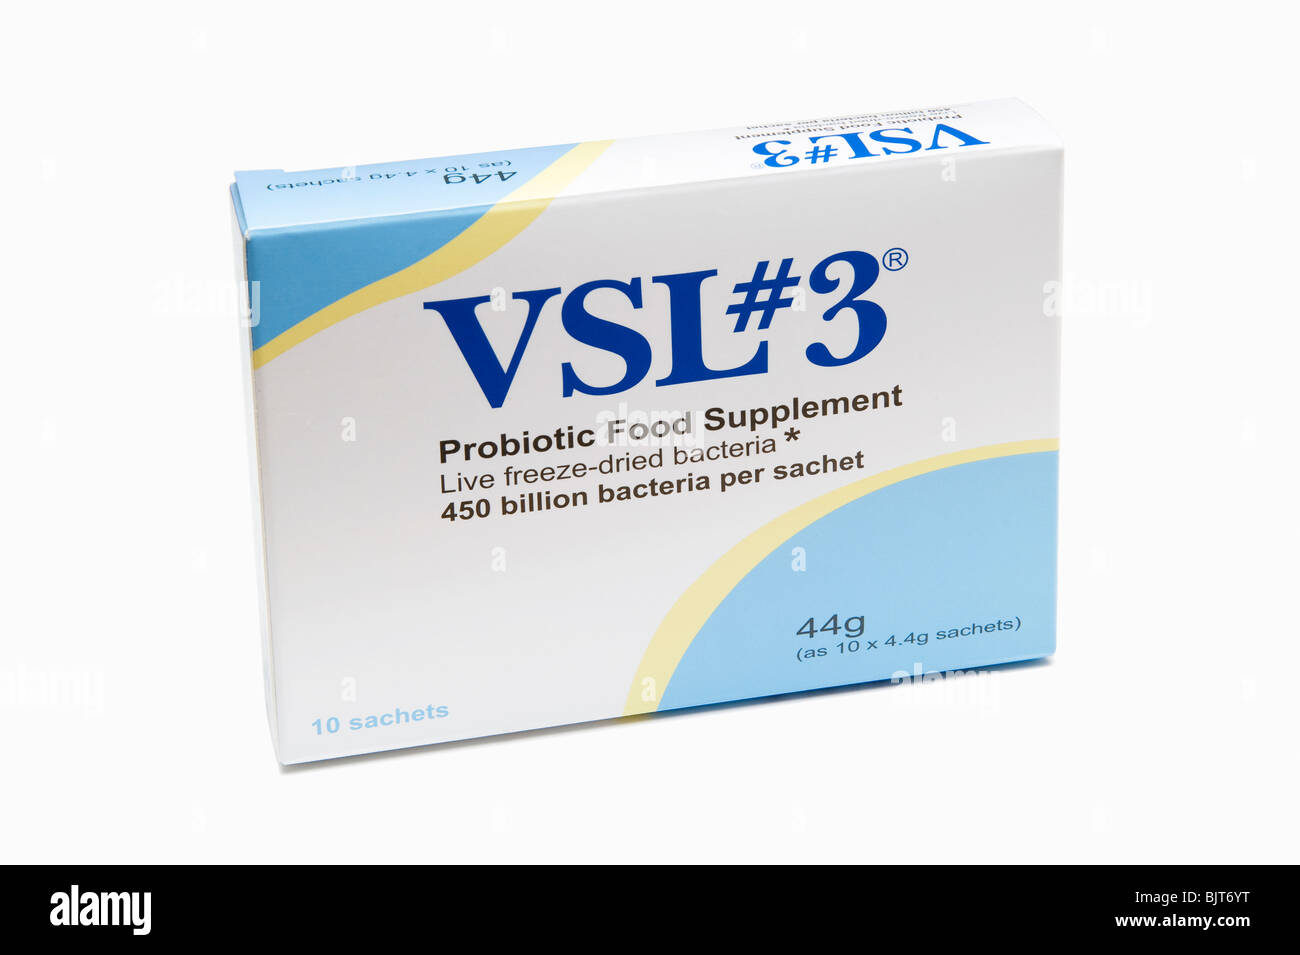 Scatola di imballaggio per la VSL#3 (vsl 3). una batteri di acido lattico probiotico di integratore alimentare Foto Stock